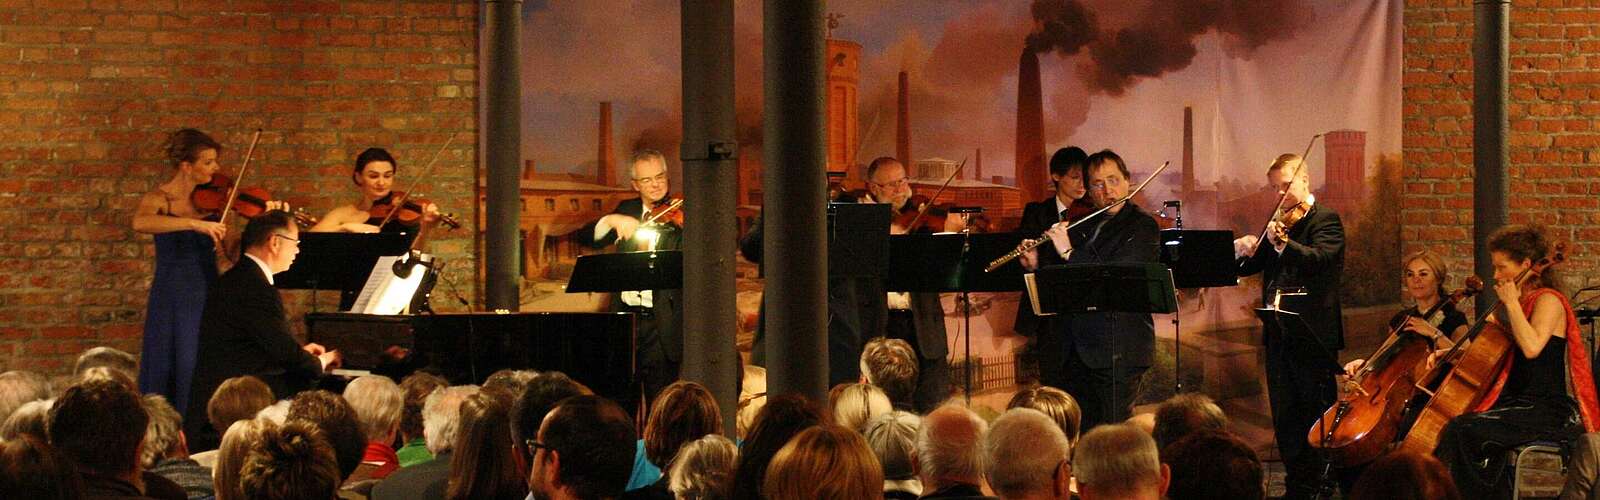 Konzert auf dem Landgut Stober,
        
    

        Foto: Havelländische Musikfestspiele gGmbH/Timo Fox